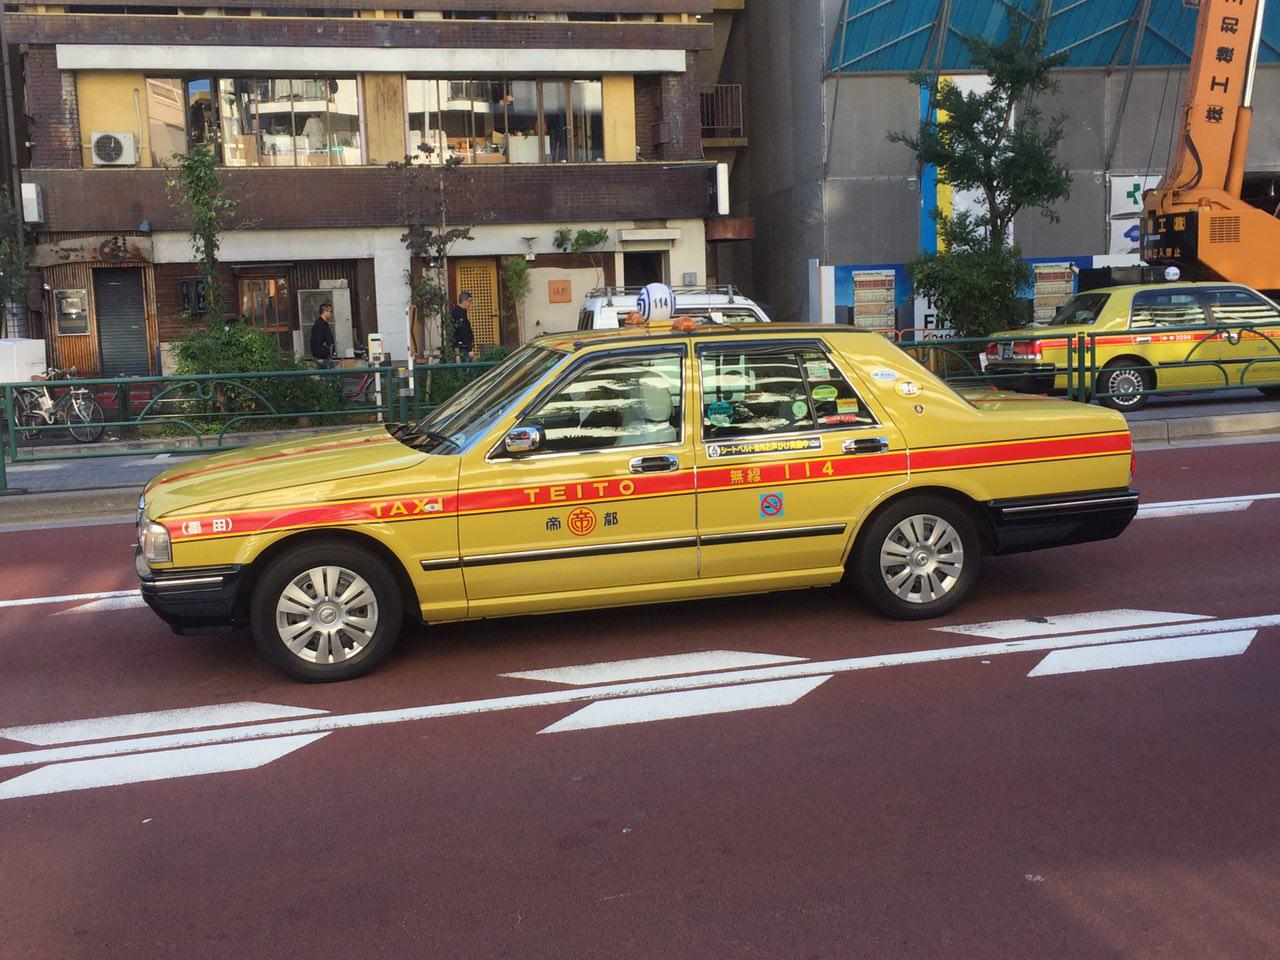 همه چیز در باره تاکسی های ژاپن /گذار سنت به مدرنیته (+عکس)